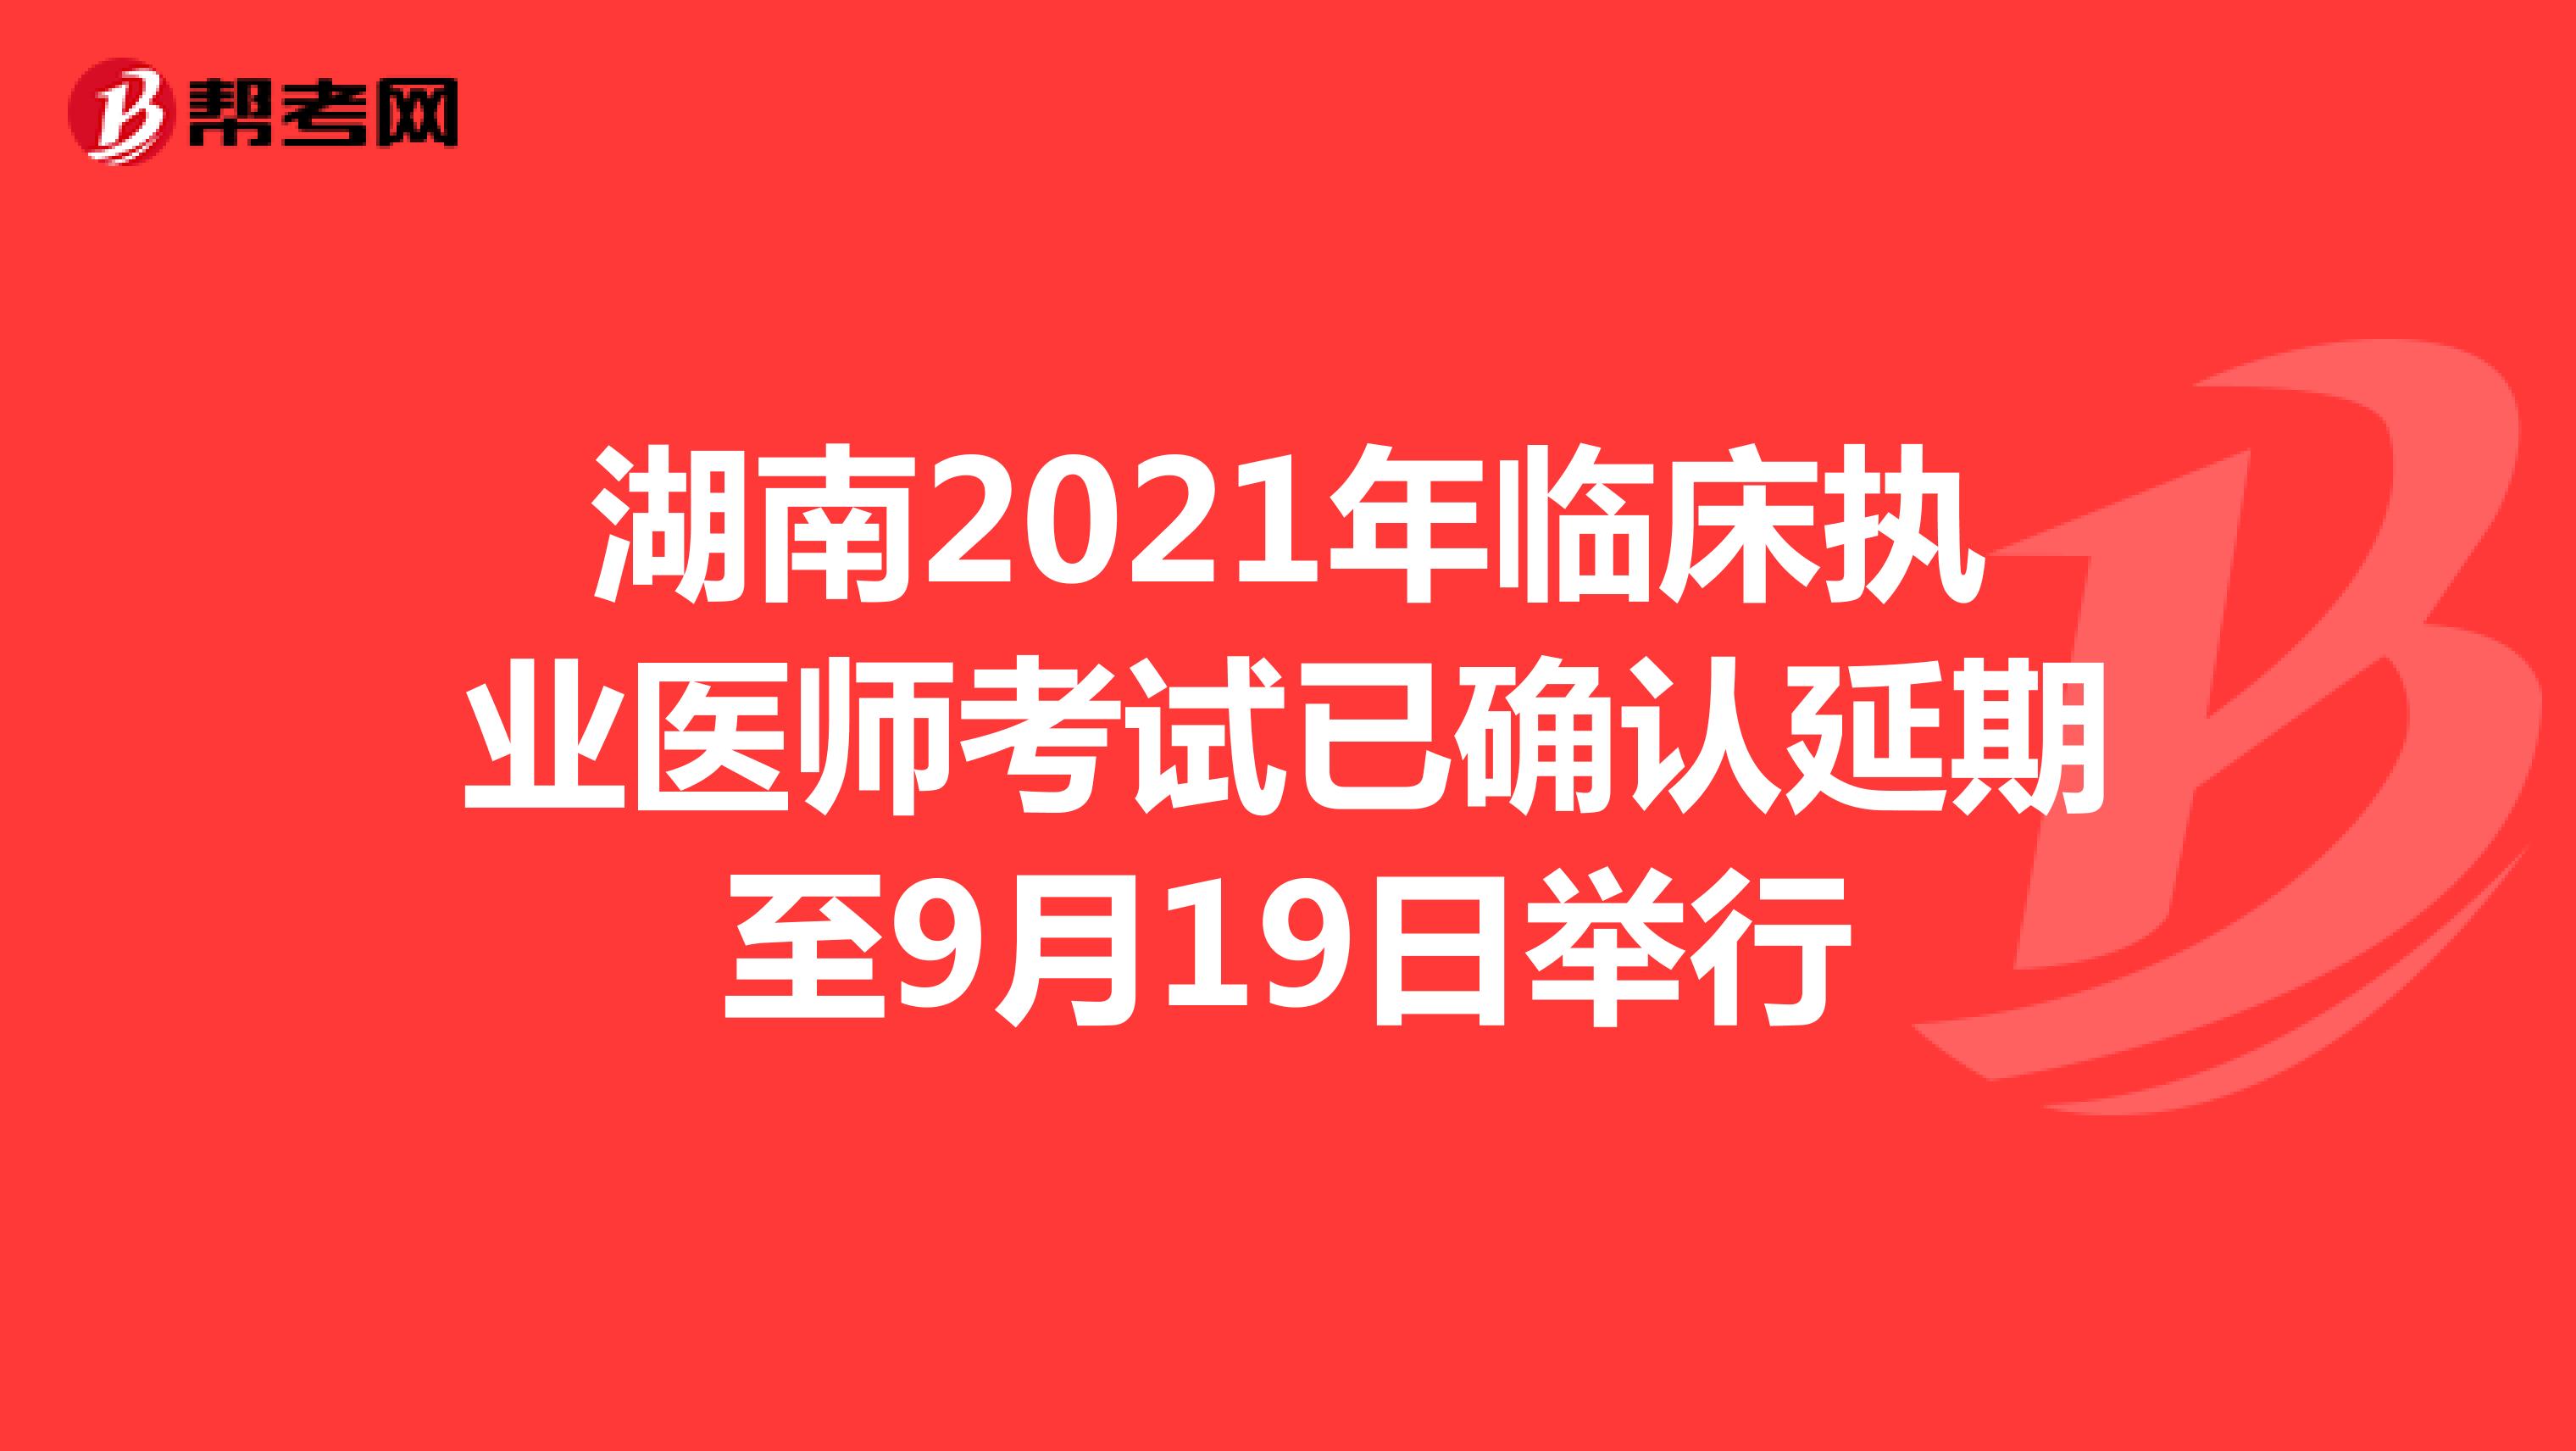 湖南2021年临床执业医师考试已确认延期至9月19日举行